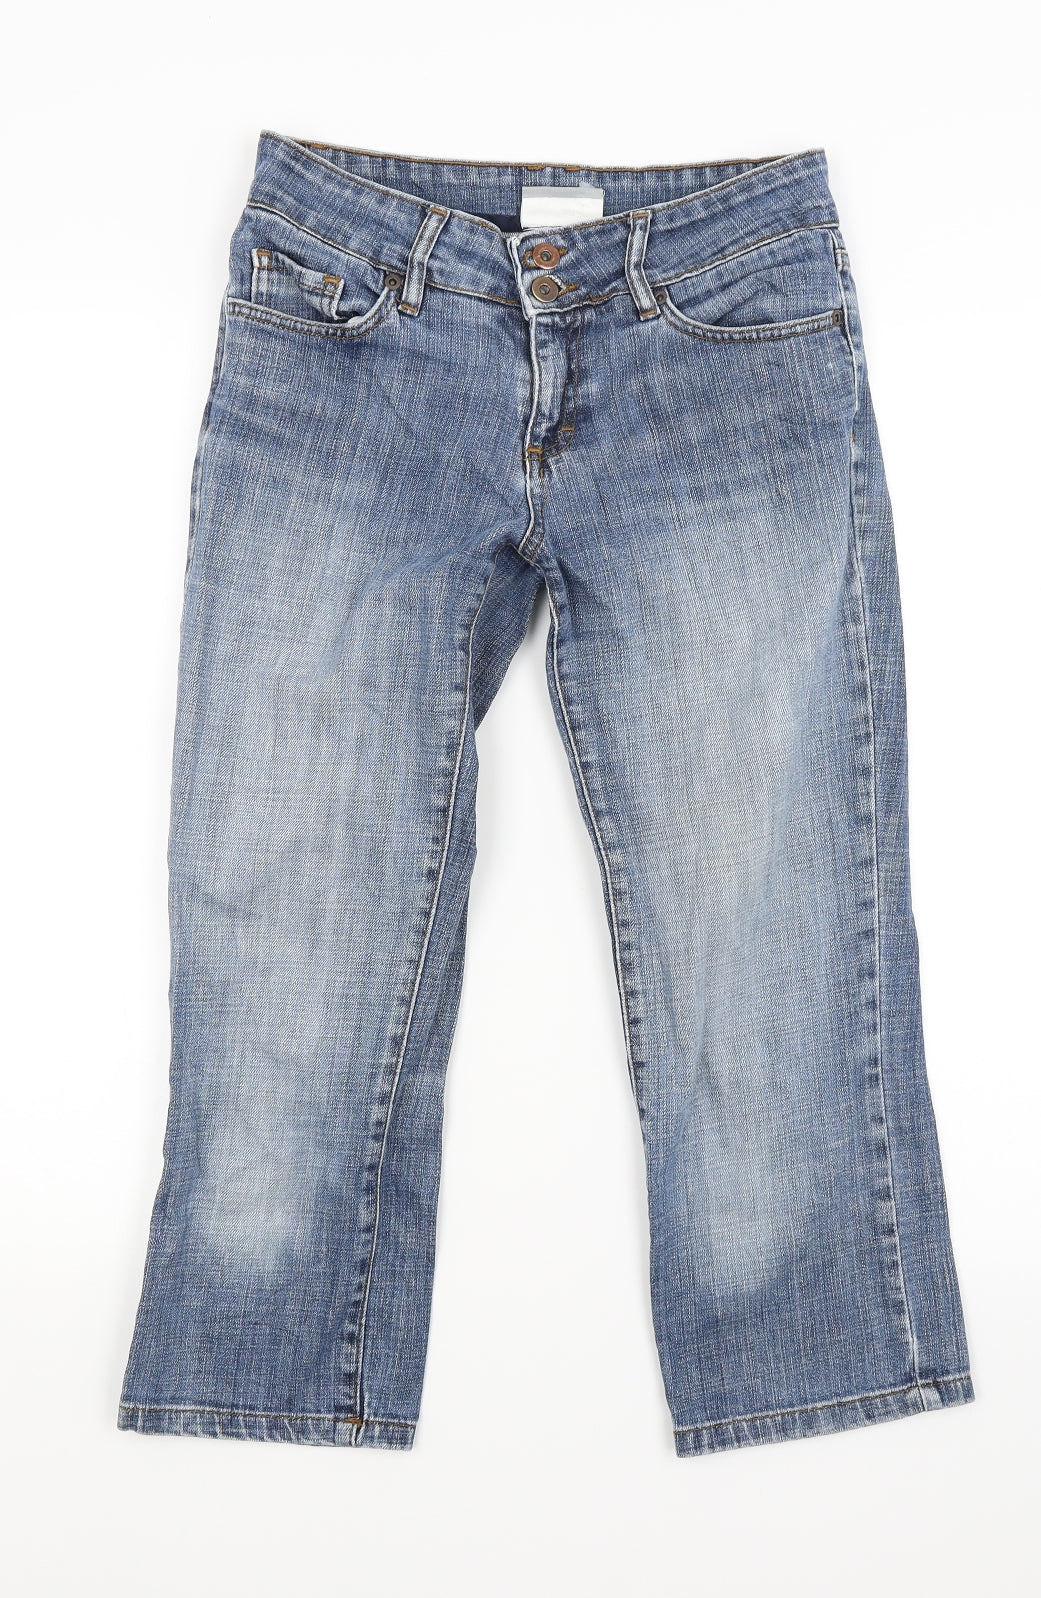 Wallis Womens Blue Denim Capri Jeans Size 8 L21 in – Preworn Ltd